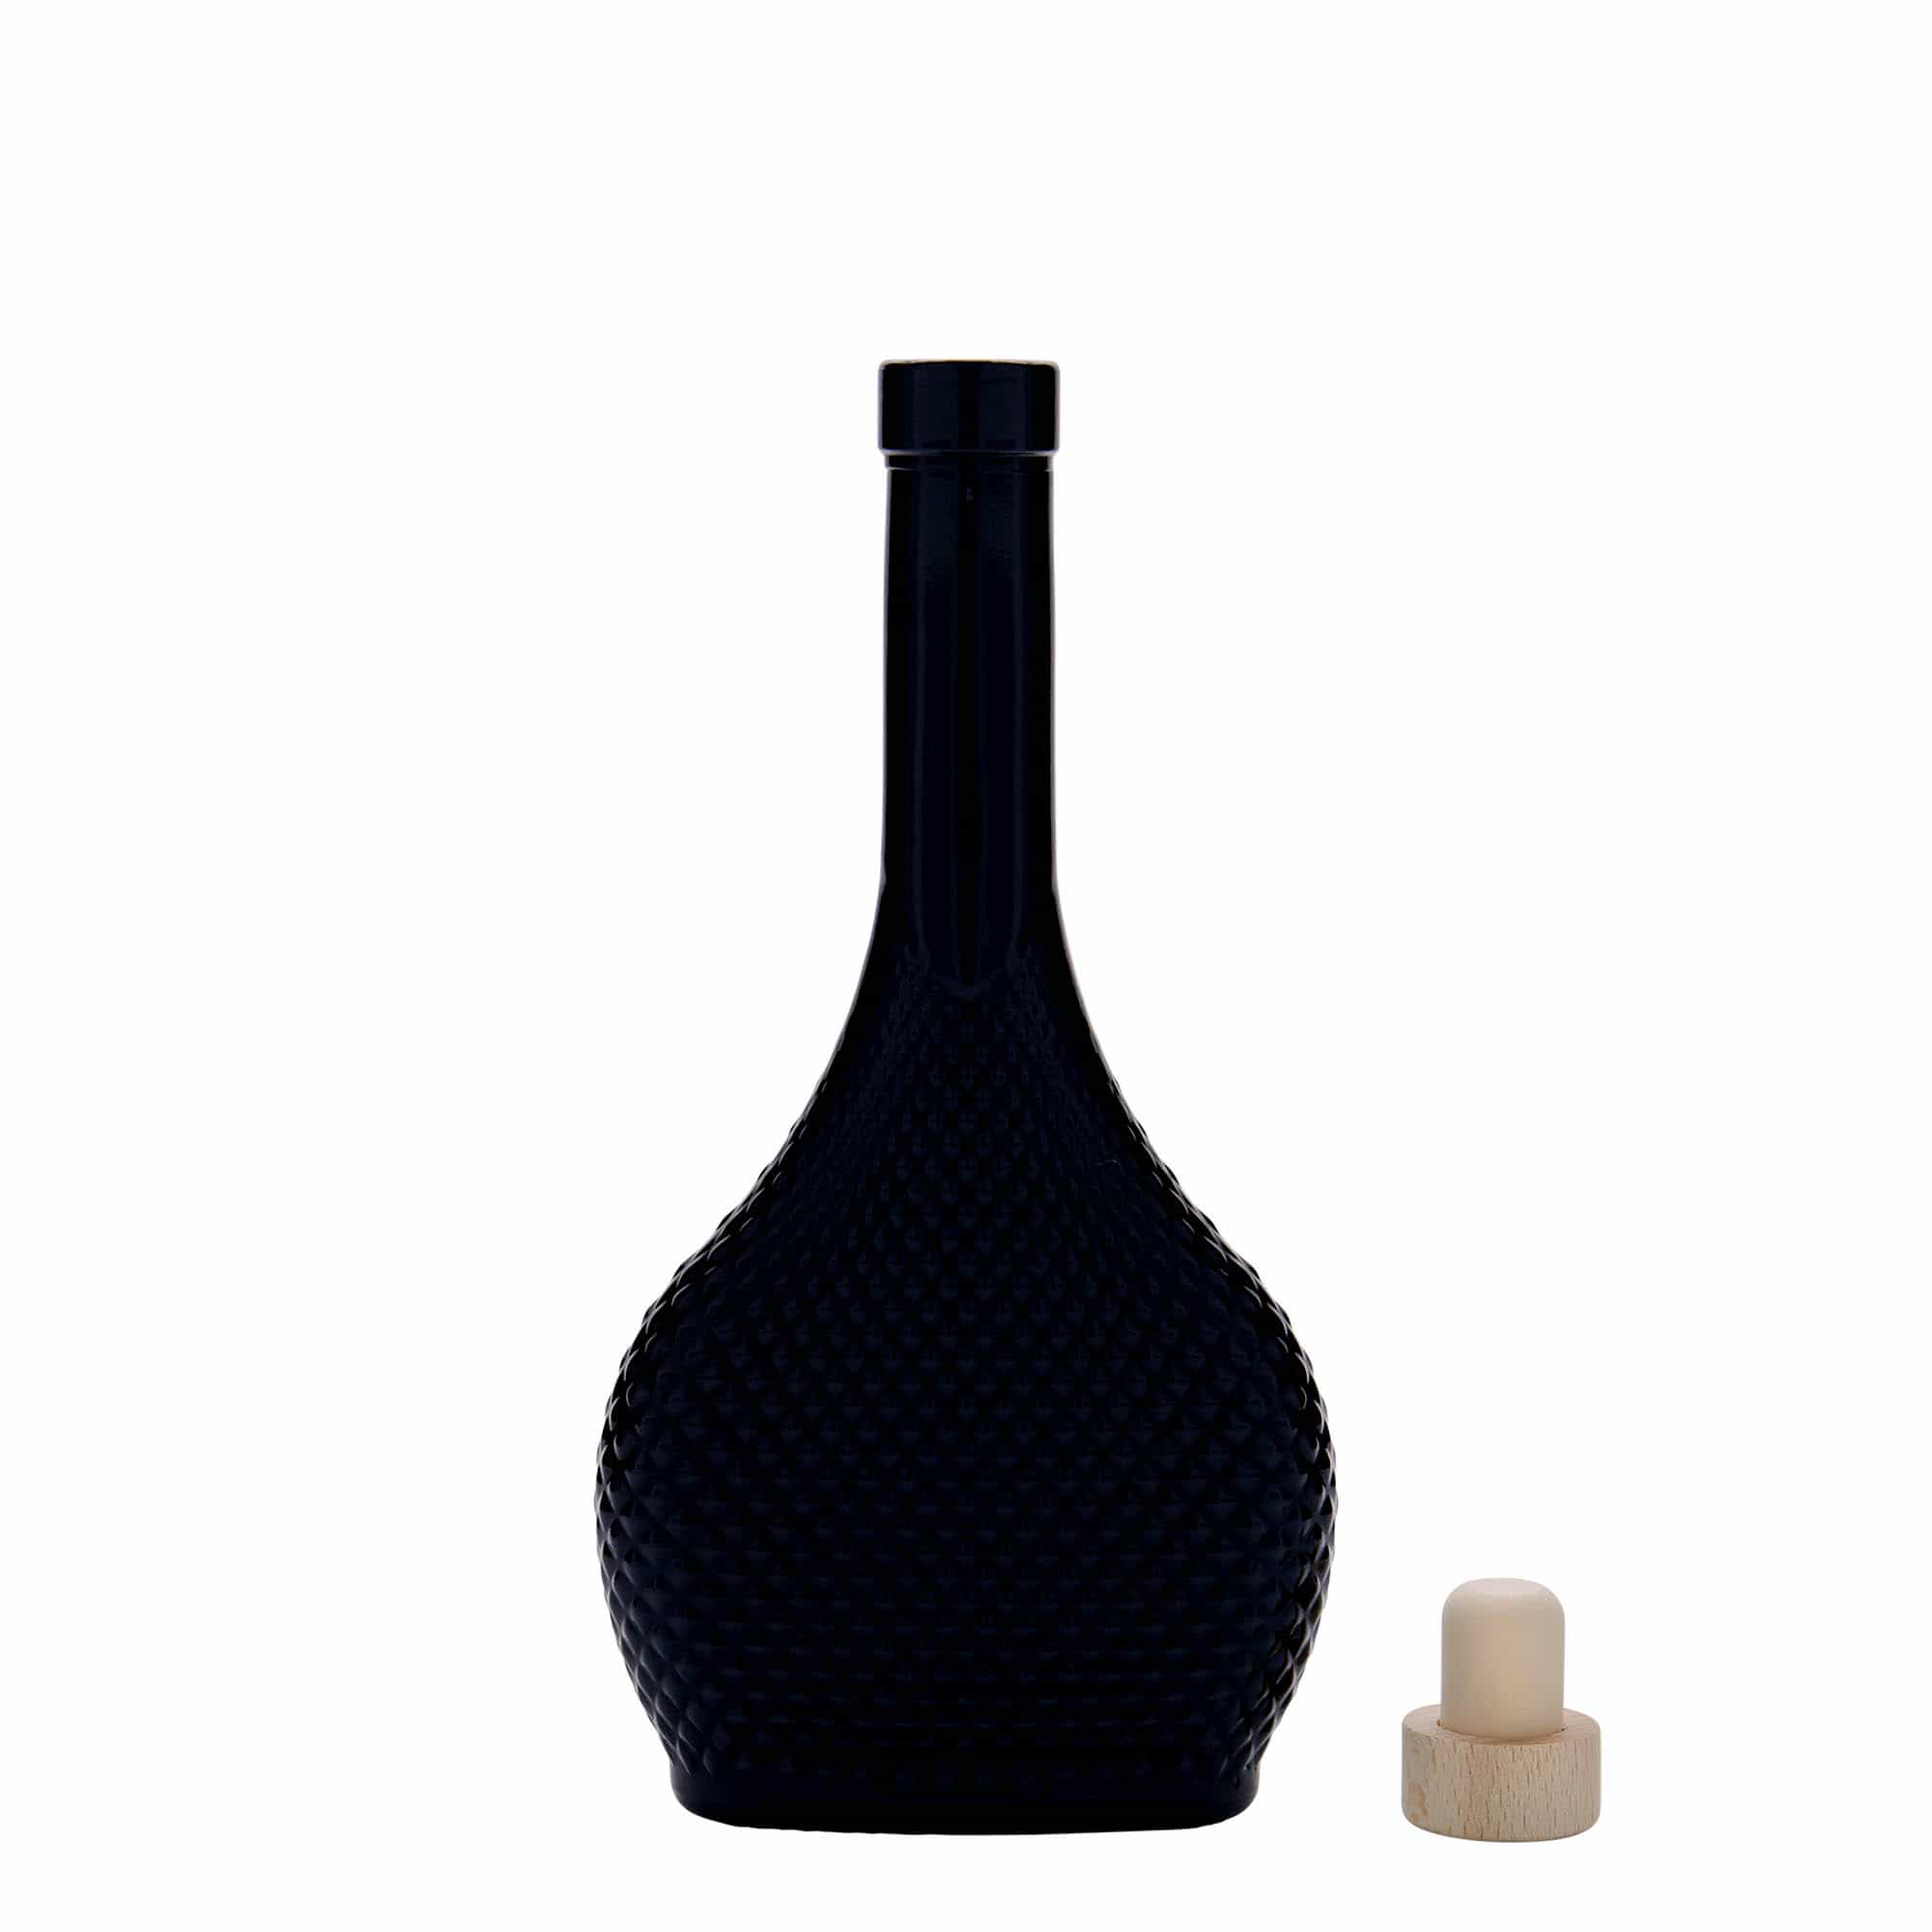 200 ml glass bottle 'Contessa Diamante', oval, black, closure: cork